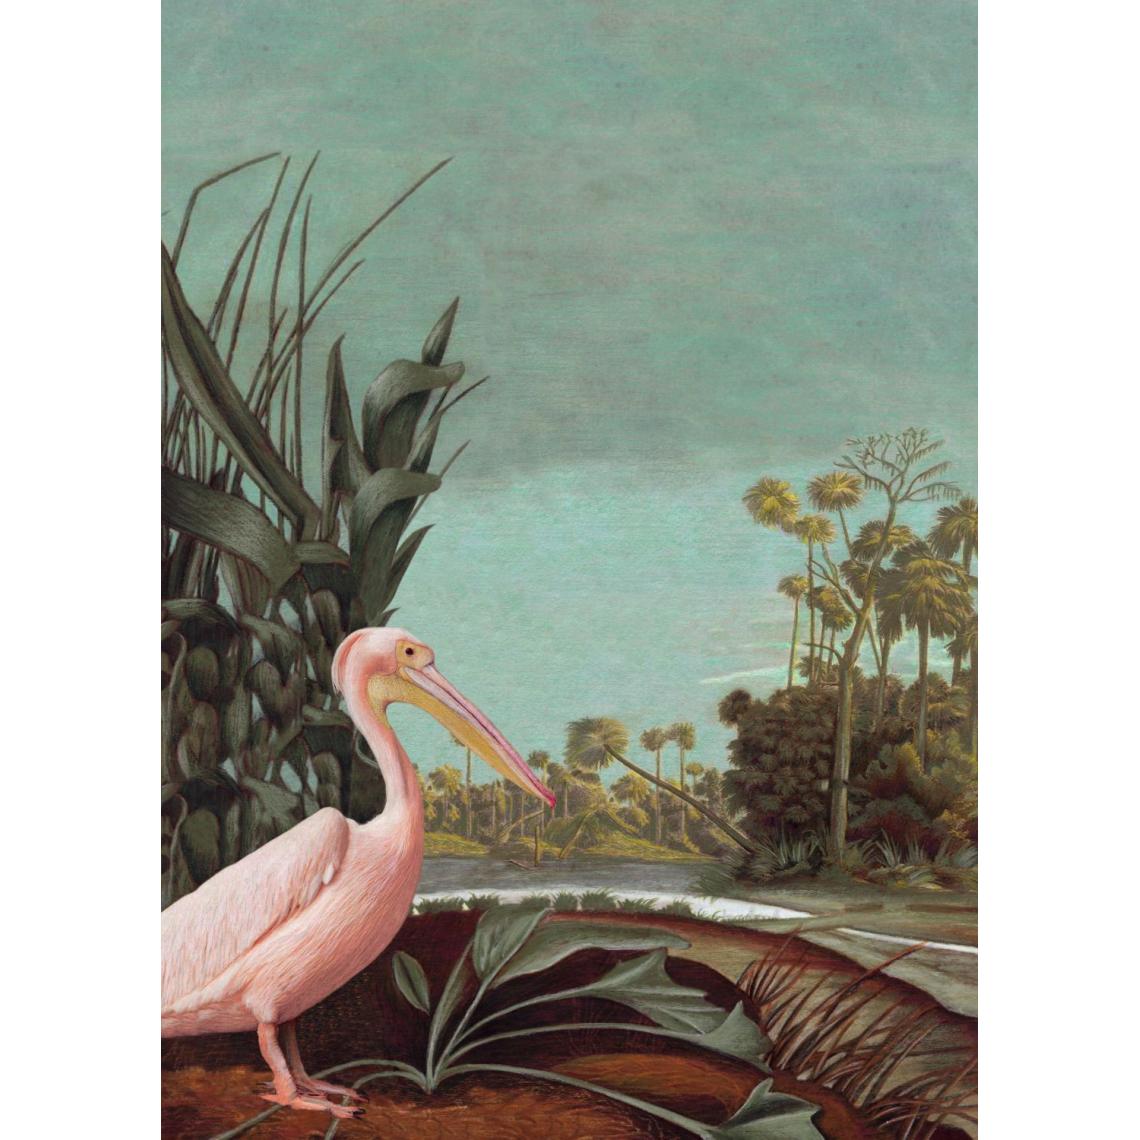 ESTAhome - ESTAhome papier peint panoramique paysage tropical turquoise grisé, marron, vert foncé et rose clair - 158948 - 2 x 2.79 m - Papier peint